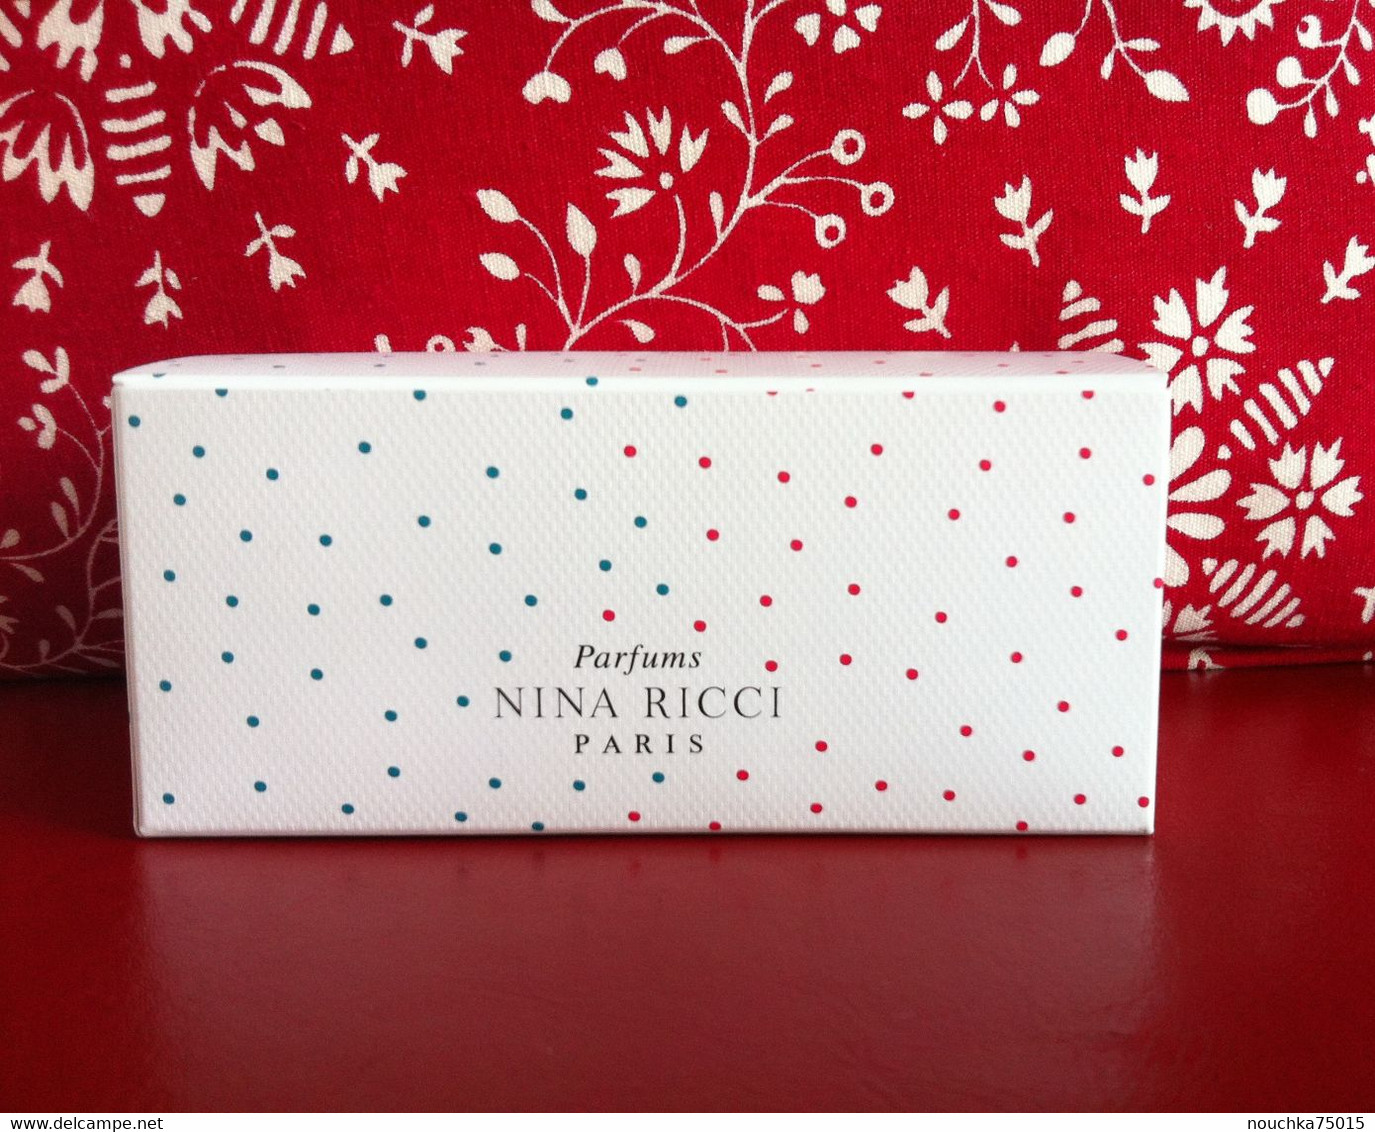 Nina Ricci - Les Gourmandises De Nina Et Luna - Productos De Belleza